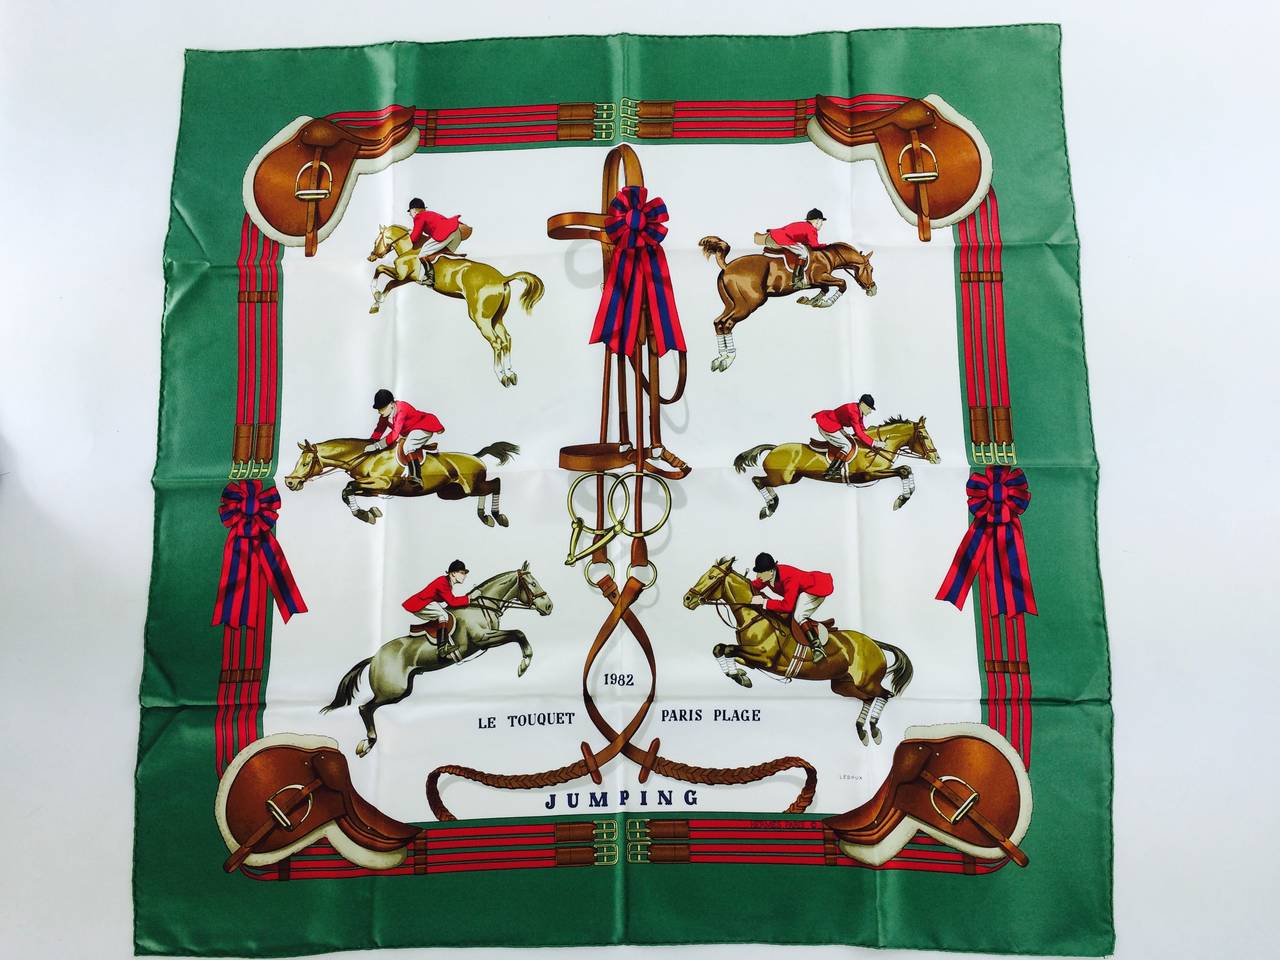 Fabulous equestrian jumping theme scarf designed by Philippe Ledoux, Le Touquet 1982 Paris Plage 